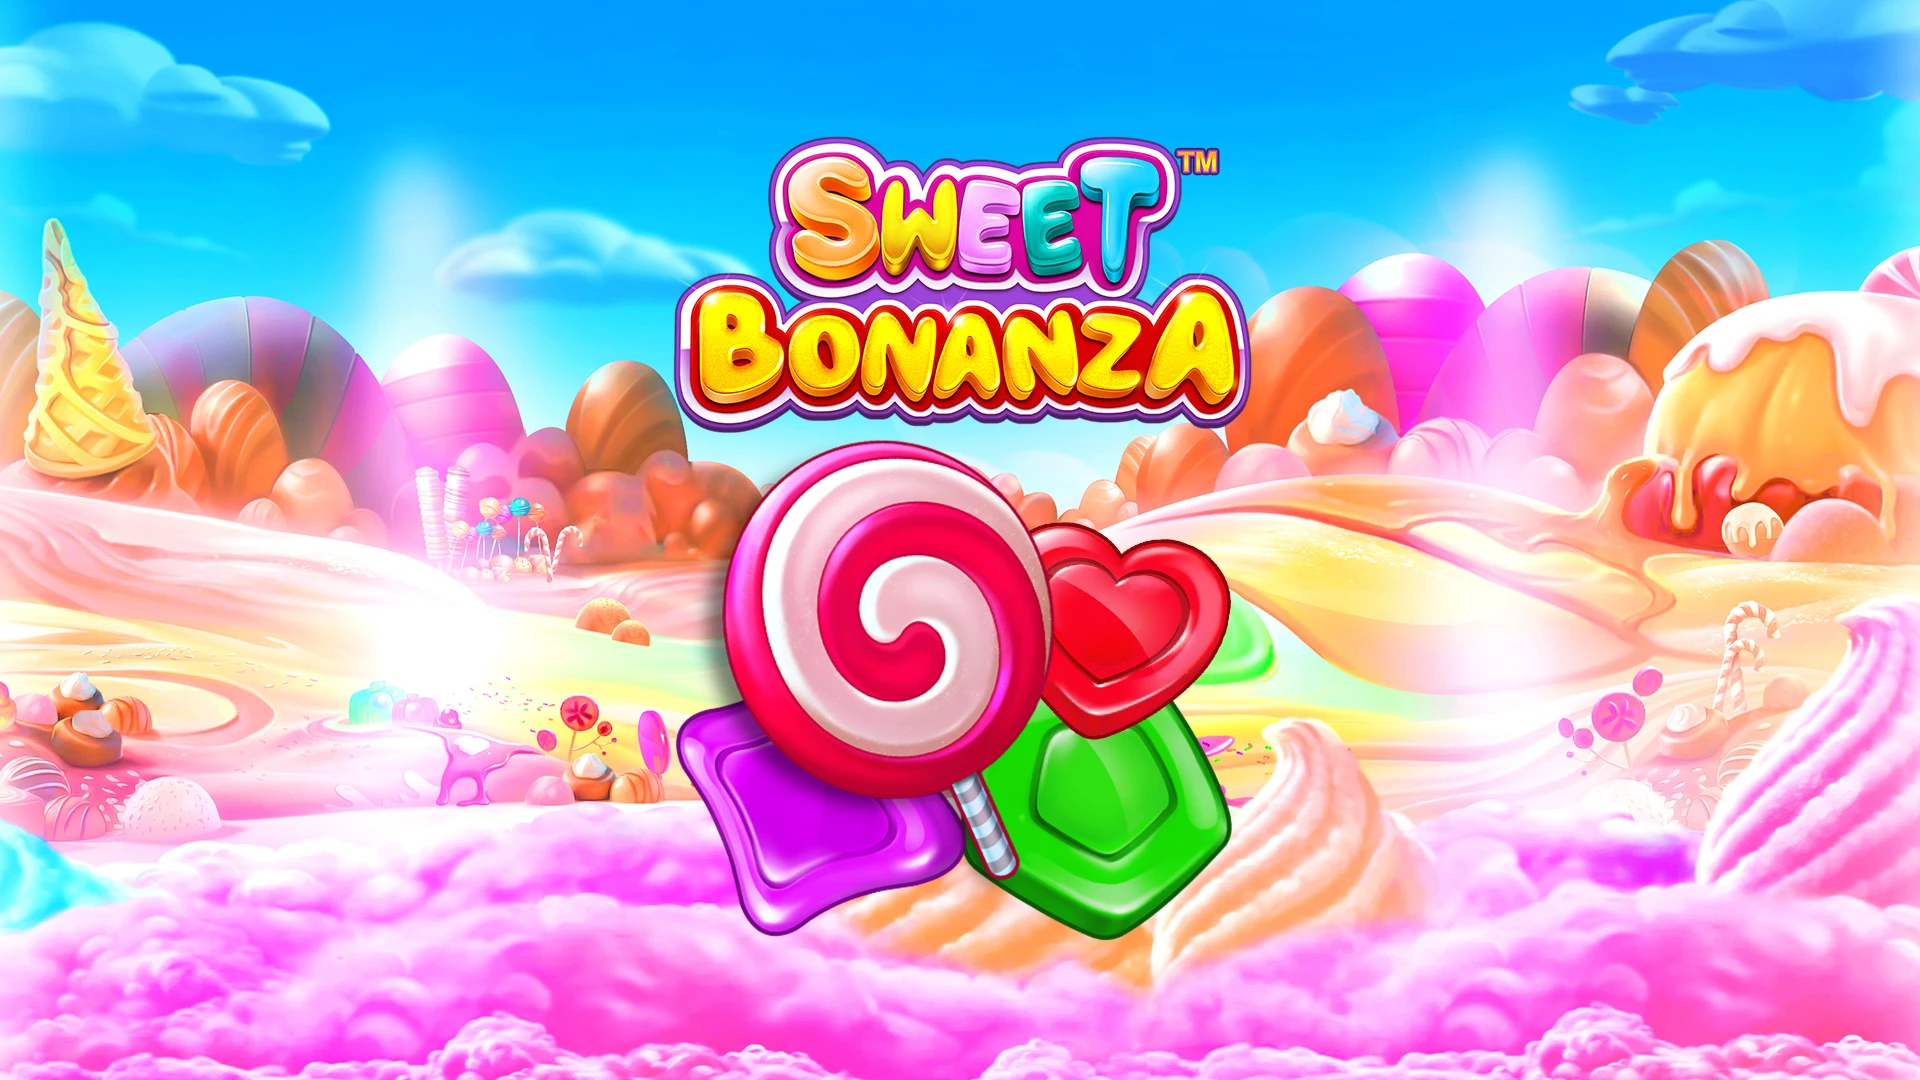  Entenda por que "Sweet Bonanza" é consagrada entre amantes de slots